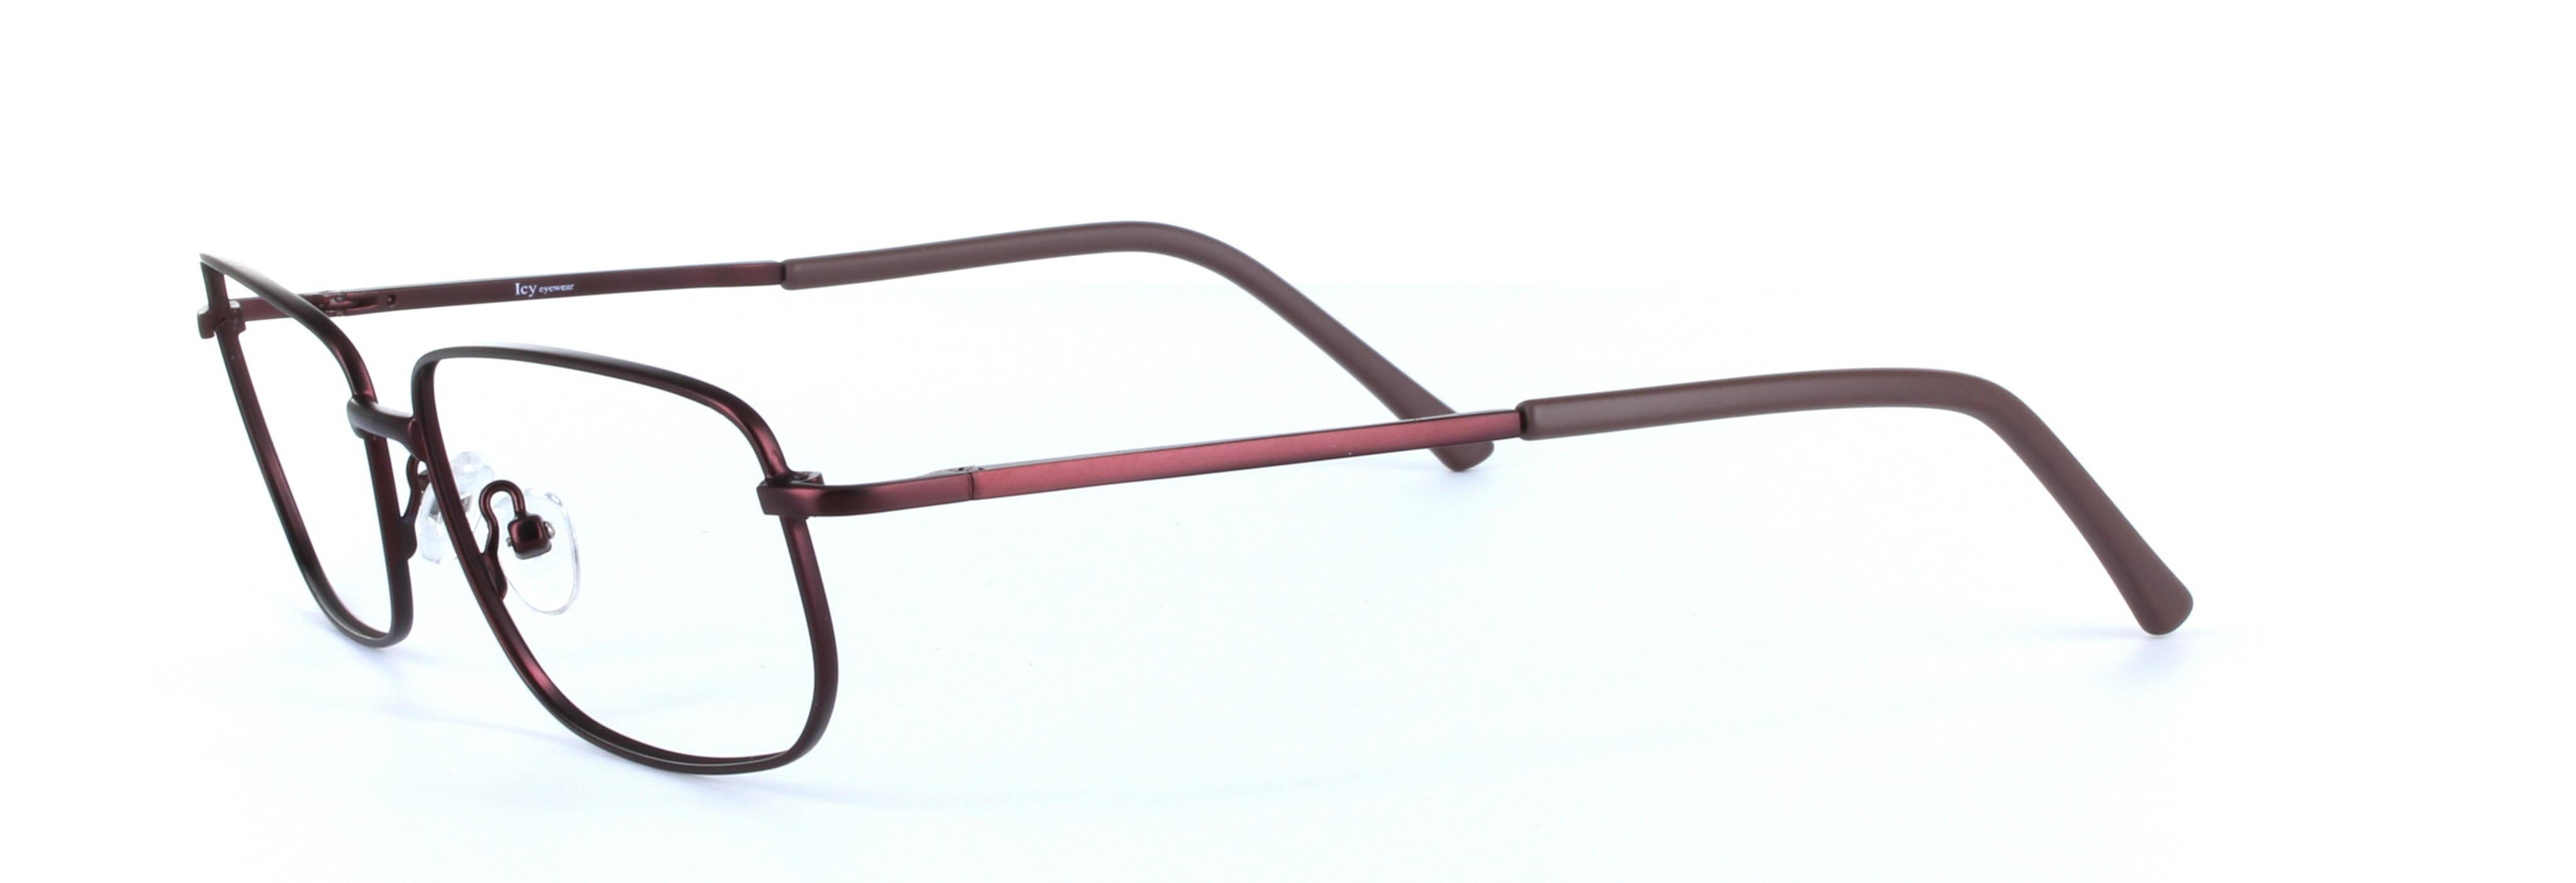 Alex Burgundy Full Rim Rectangular Metal Glasses - Image View 2